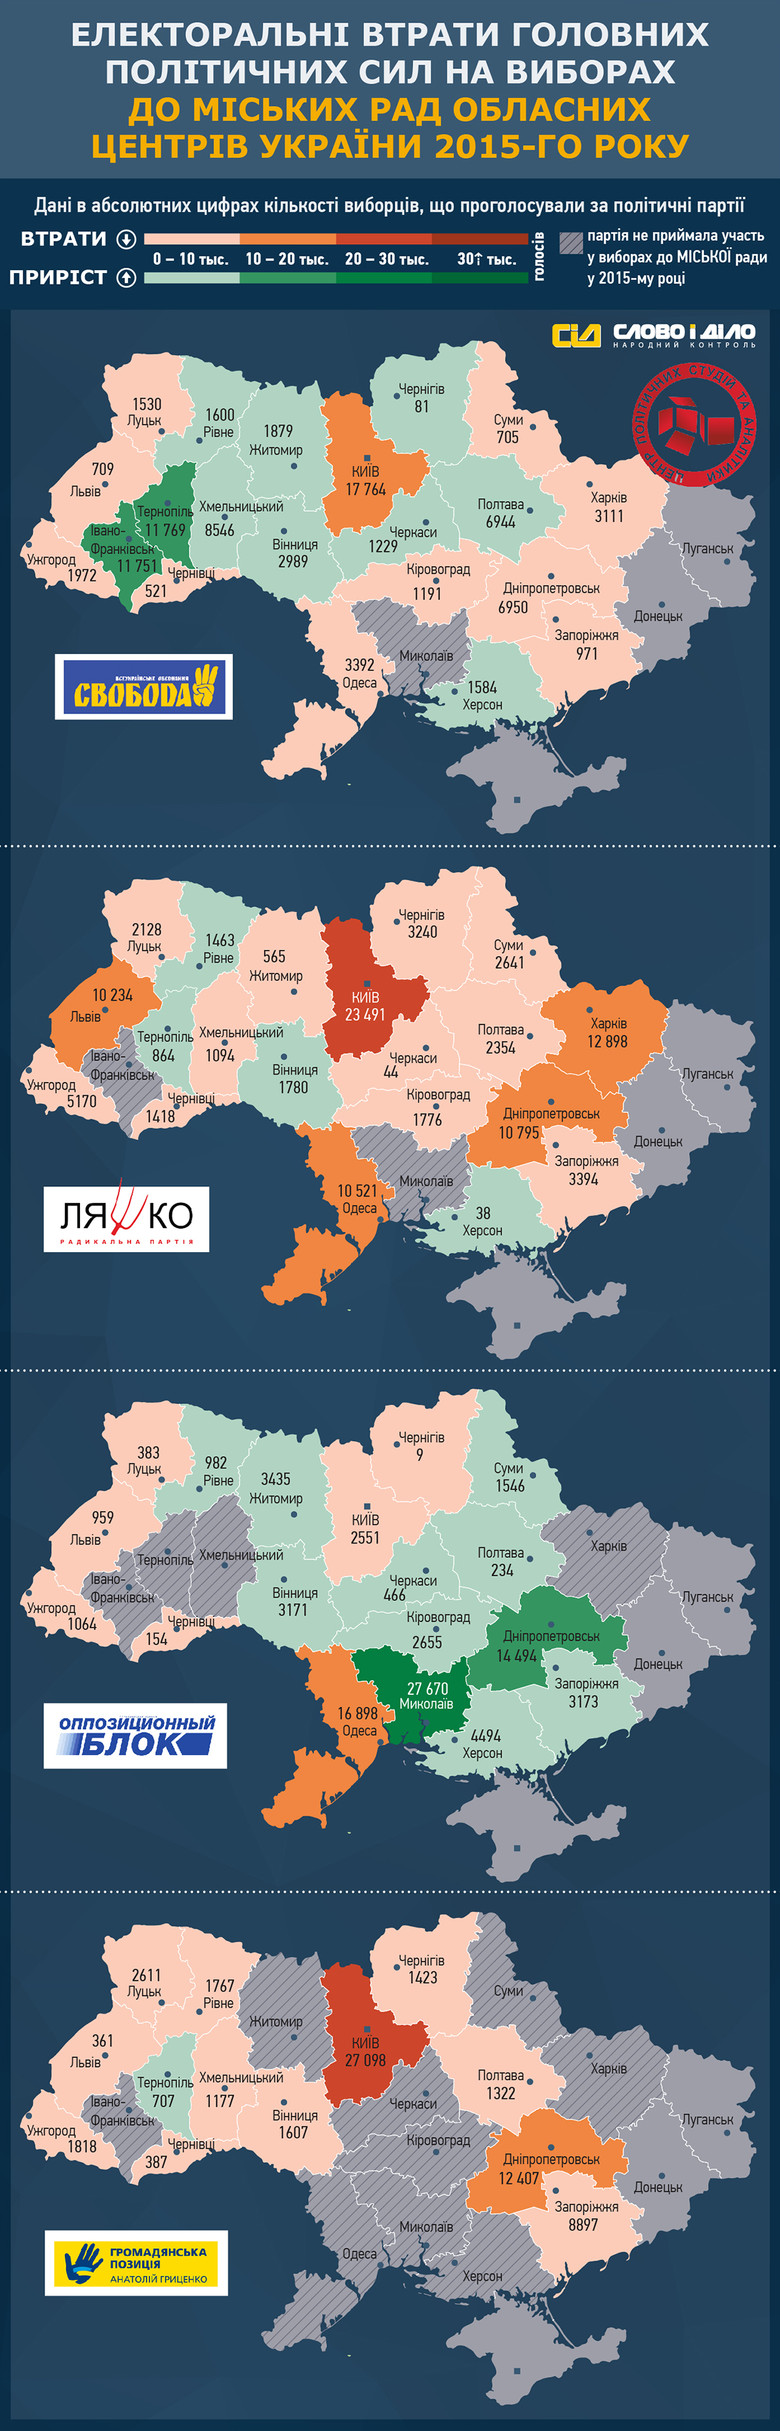 «Слово і Діло» спільно з Центром політичних студій та аналітики продовжує аналізувати результати місцевих виборів в України щодо кількості втрачених голосів партій в обласних центрах.